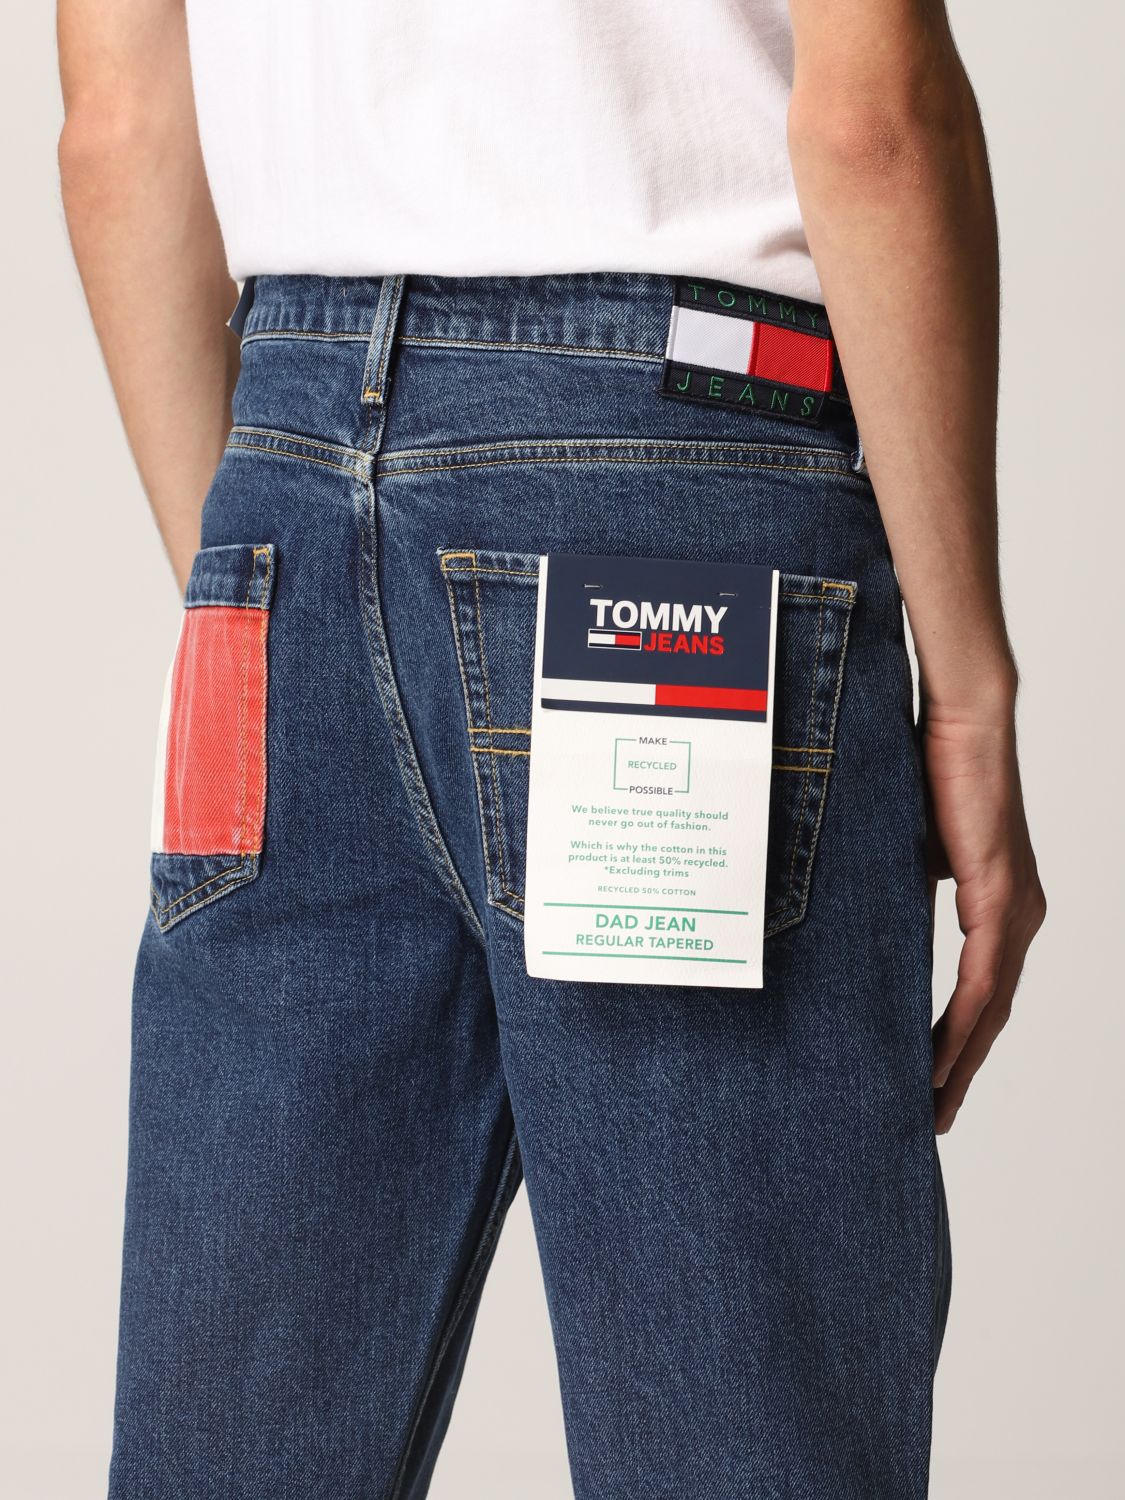 TOMMY HILFIGER: jeans - Denim | Tommy Hilfiger jeans DM0DM11498 online on GIGLIO.COM